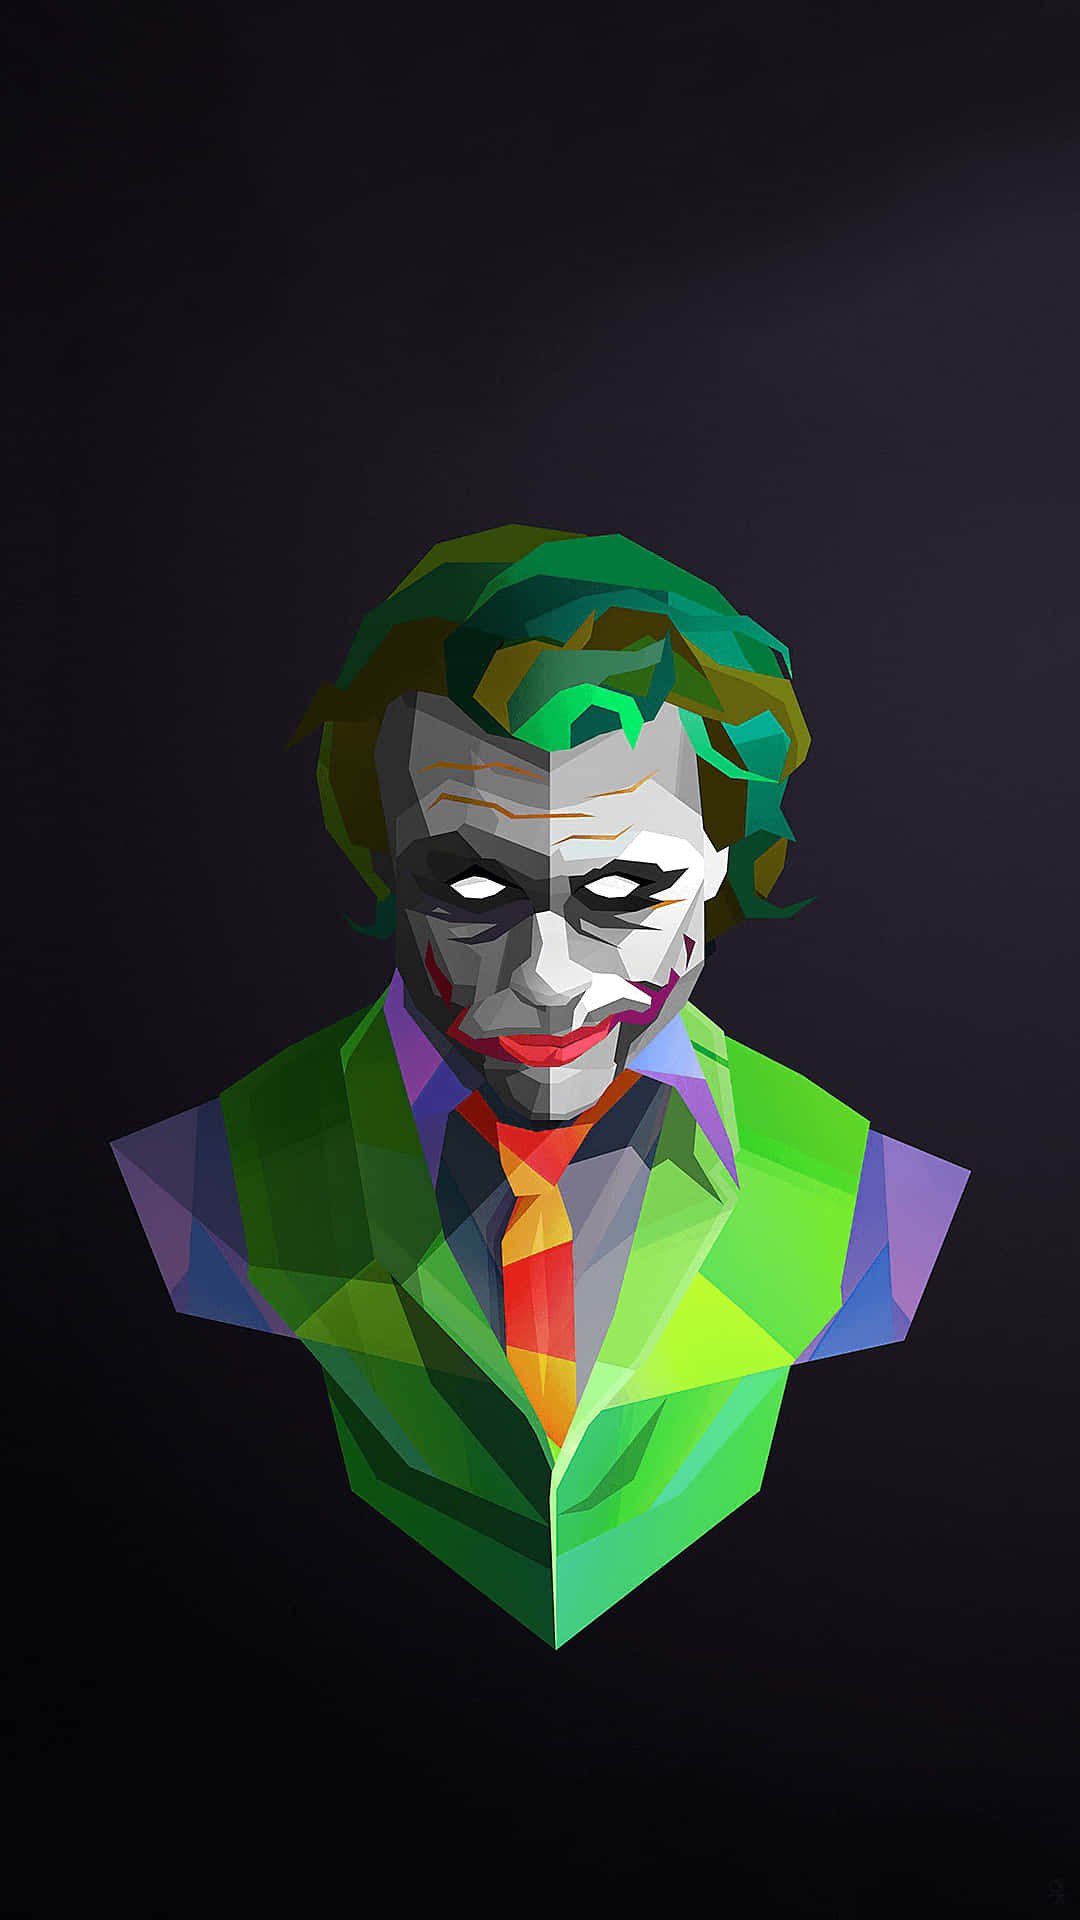 Mesmerizing Joker Painting Wallpaper